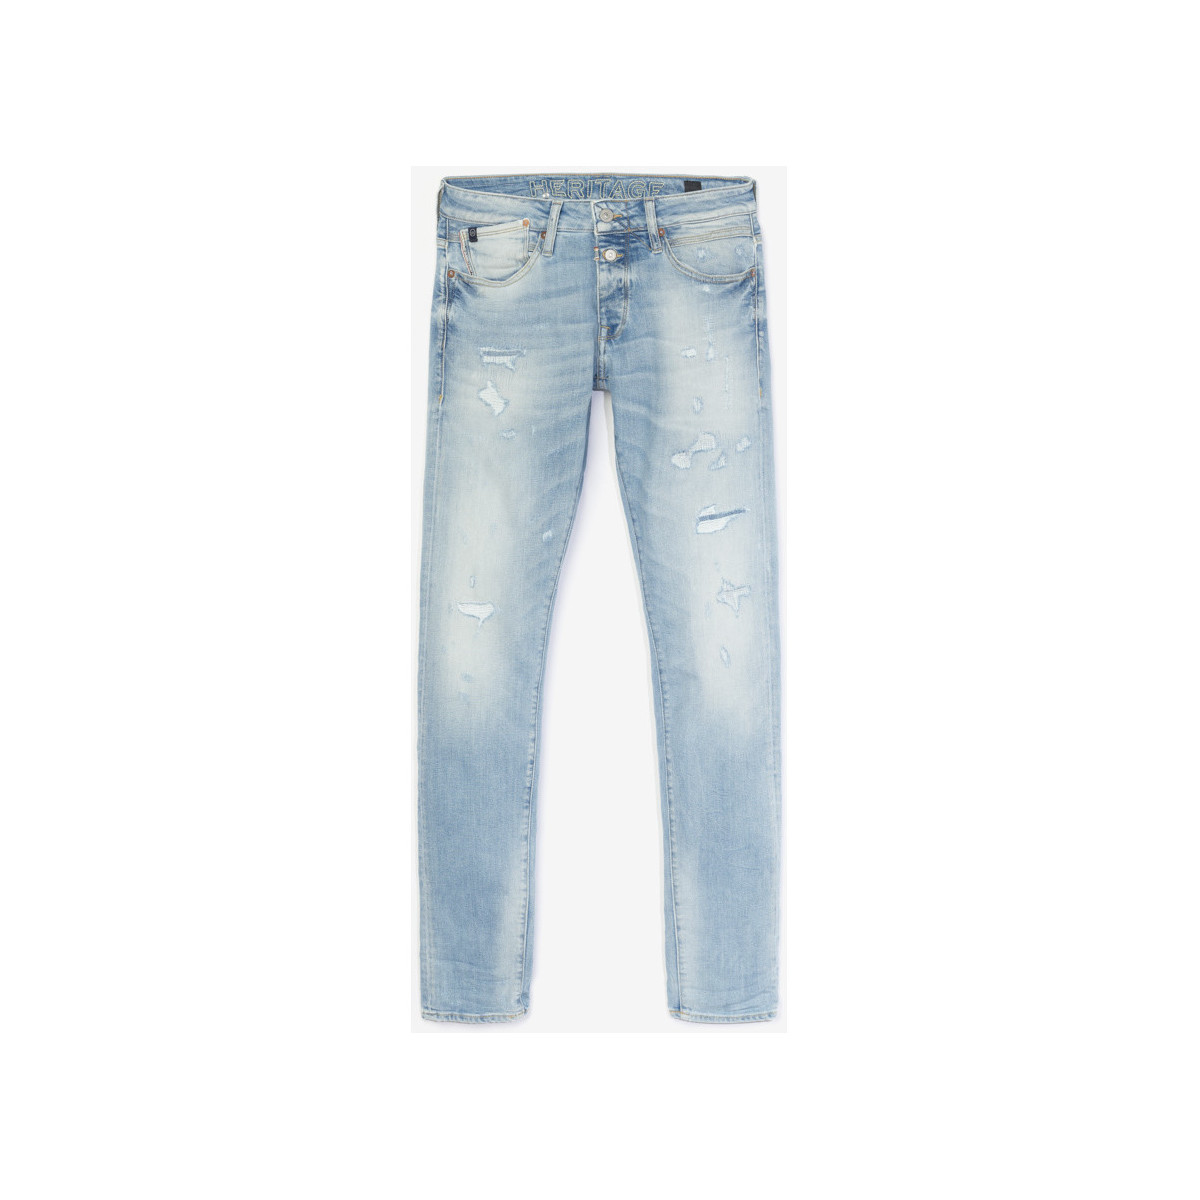 Le Temps des Cerises Bleu Calw 700/11 adjusted jeans de